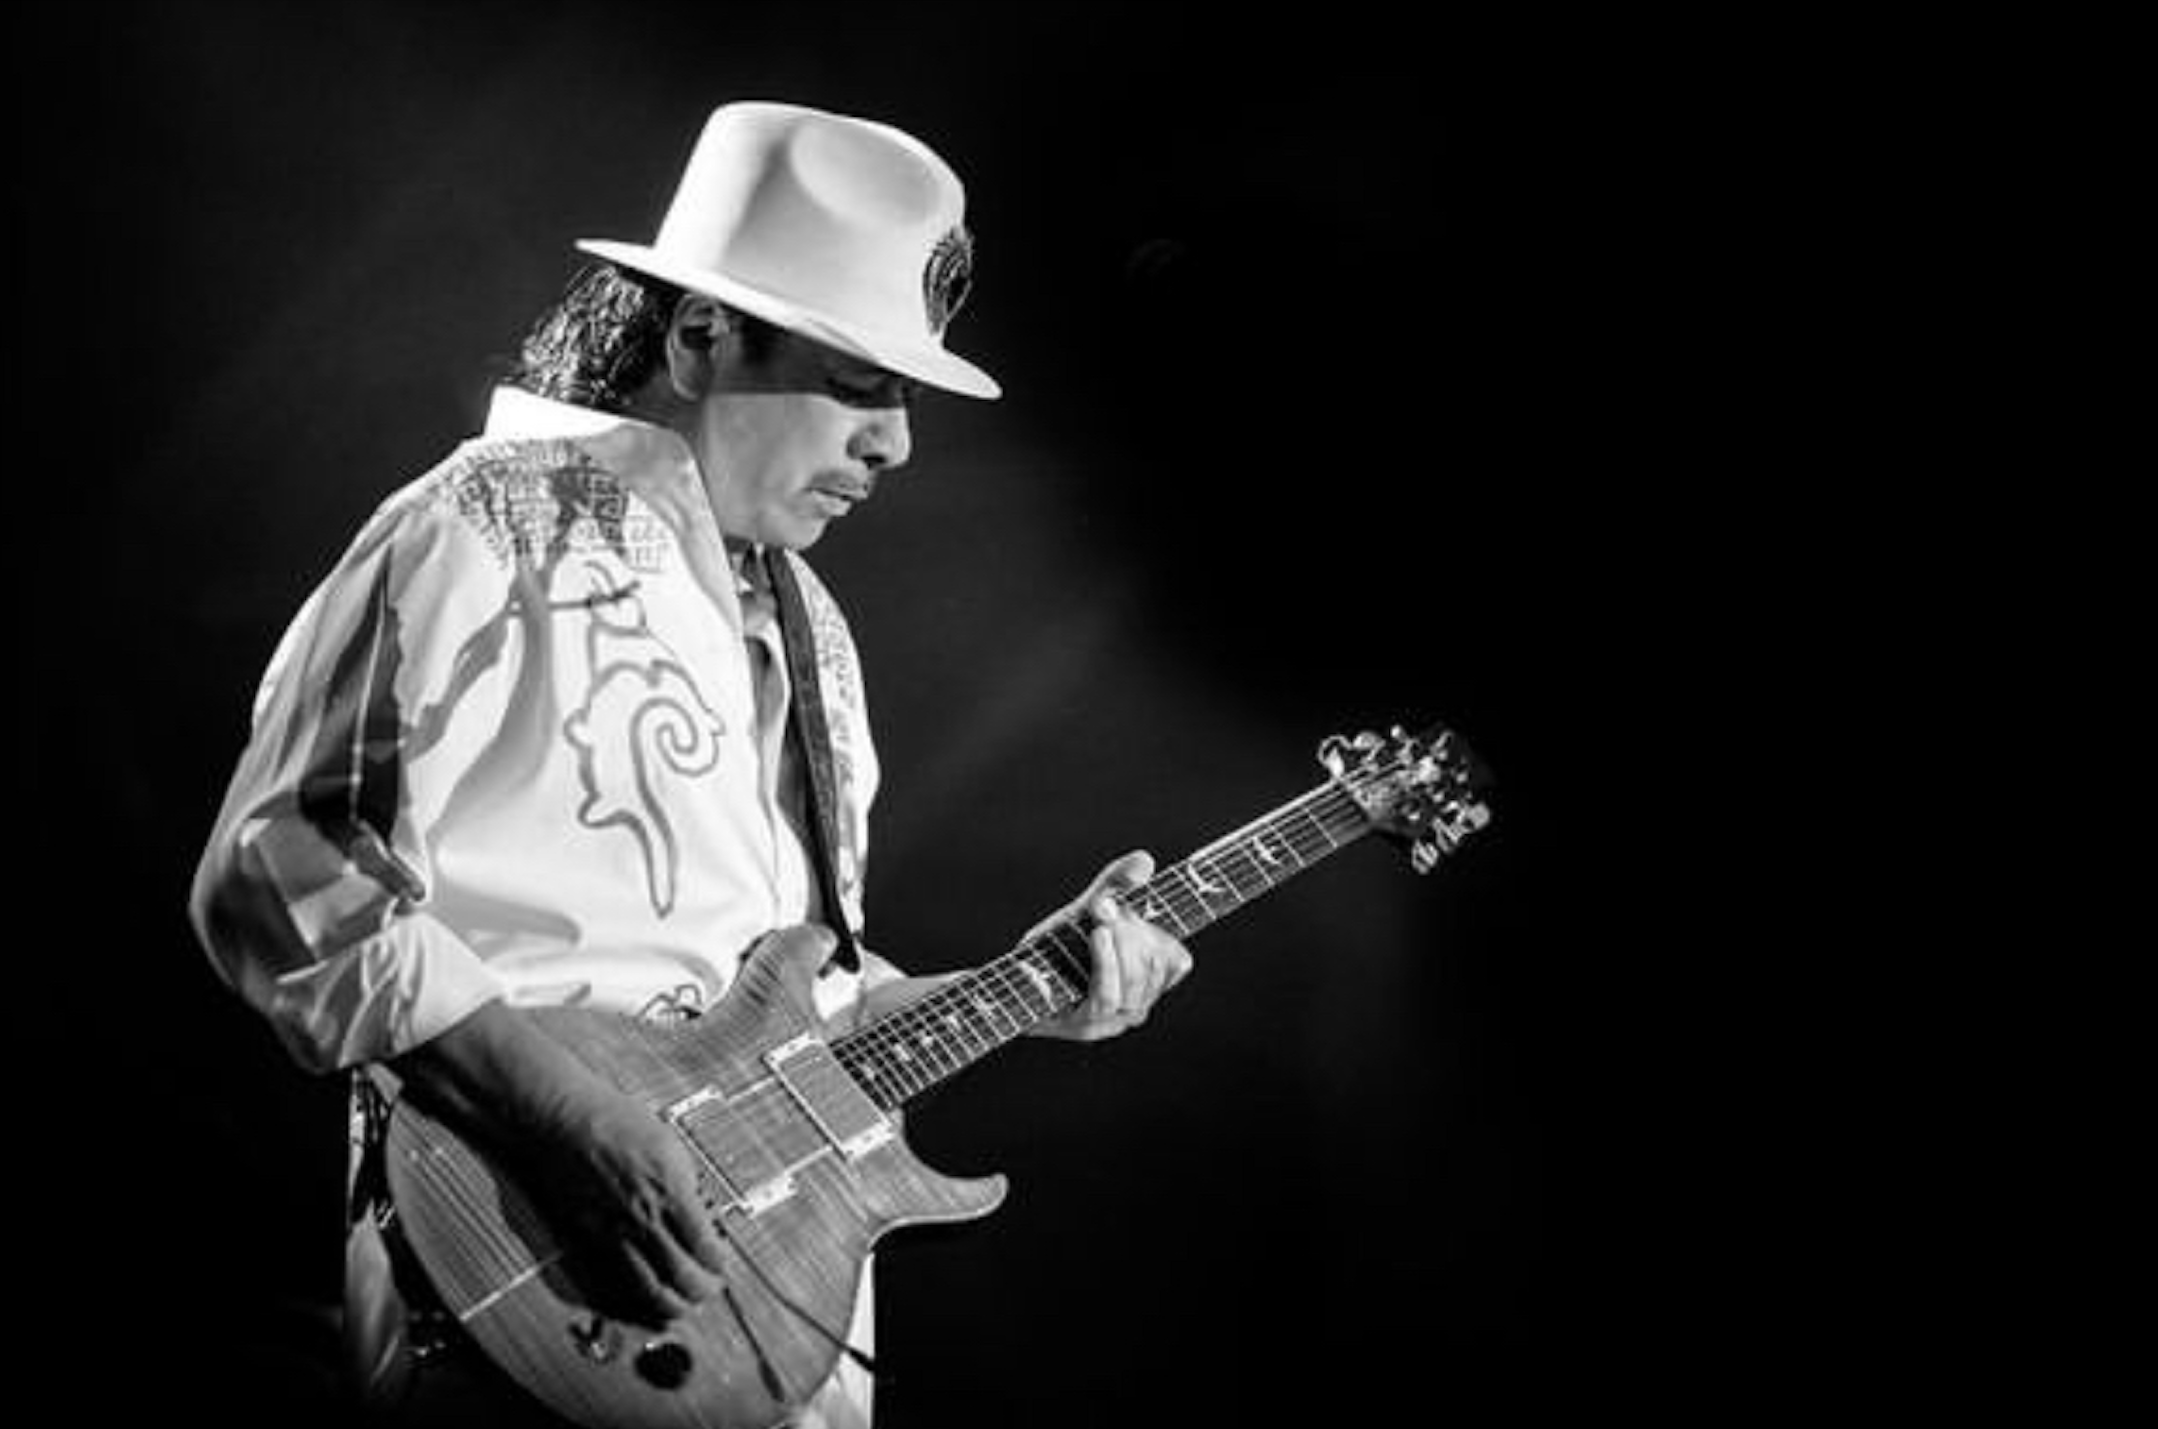 Carlos Santana postpones some concerts, including Dallas, after health scare